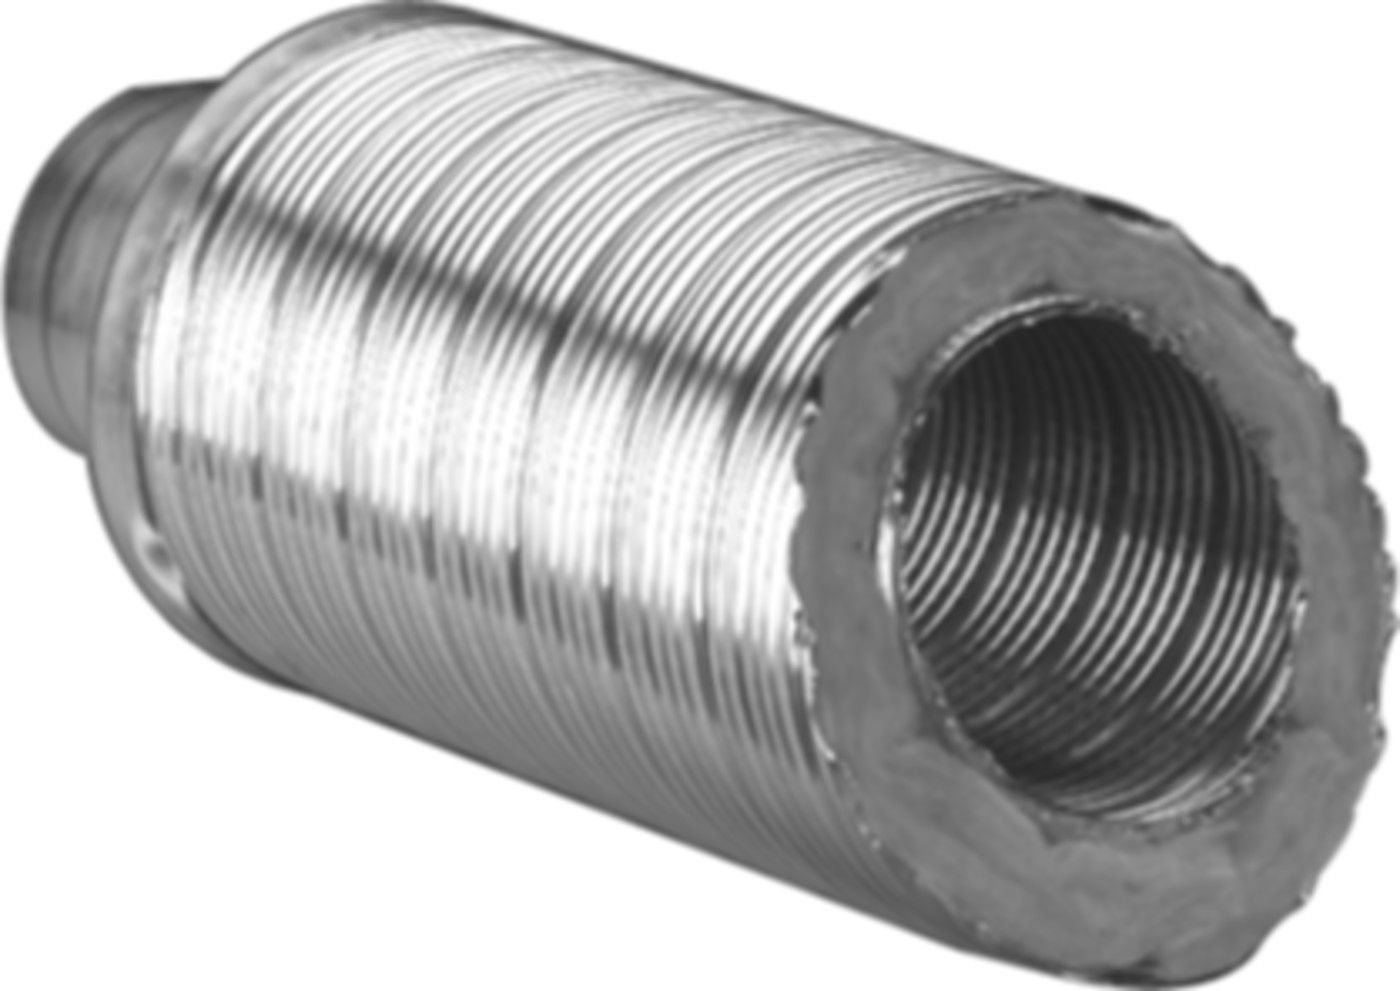 Telefonie-Schalldämpfer TSD 50 200/307 m/Glasfaserisolierung 50 mm, Länge 1 m - Flexible Lüftungsschläuche